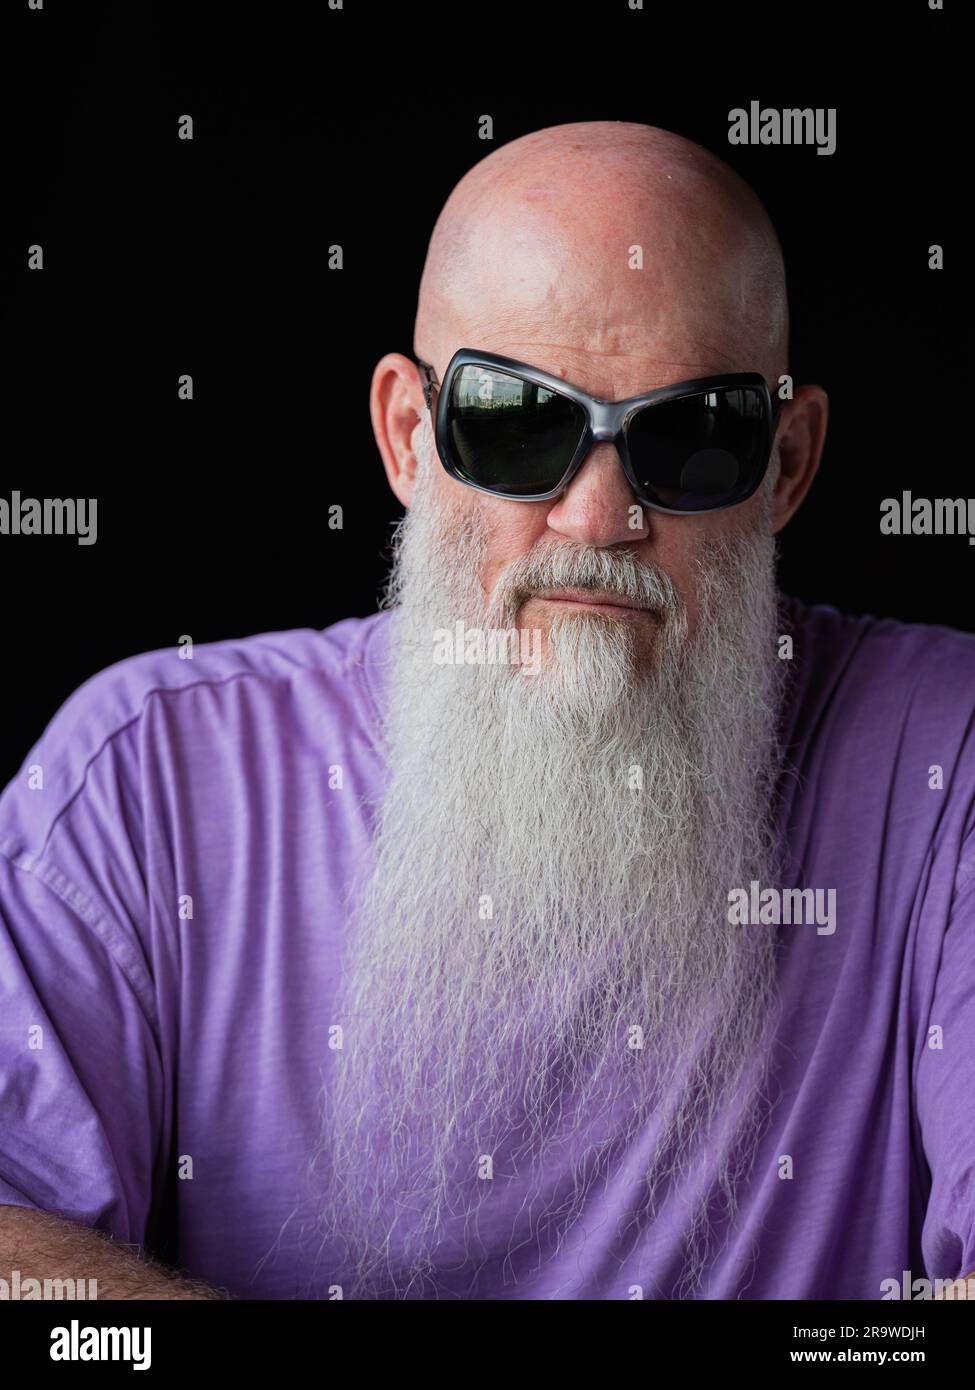 Porträt eines Mannes mit langem grauem Bart, der ein lilafarbenes T-Shirt und eine Sonnenbrille im Nahaufnahme-Porträt trägt Stockfoto